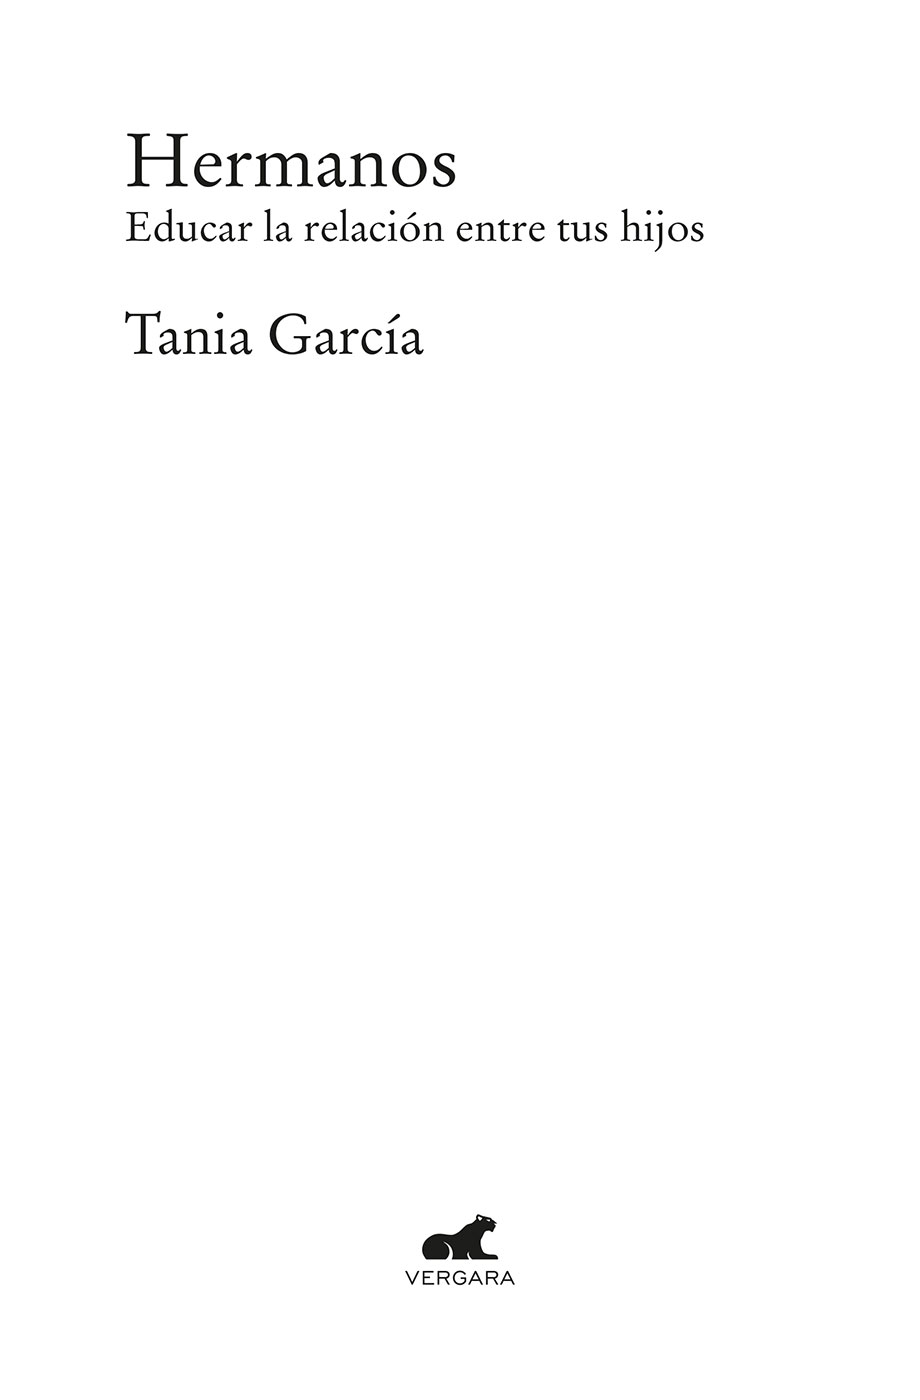 Tania García es escritora madre de dos hijos y especialista en educación - photo 1